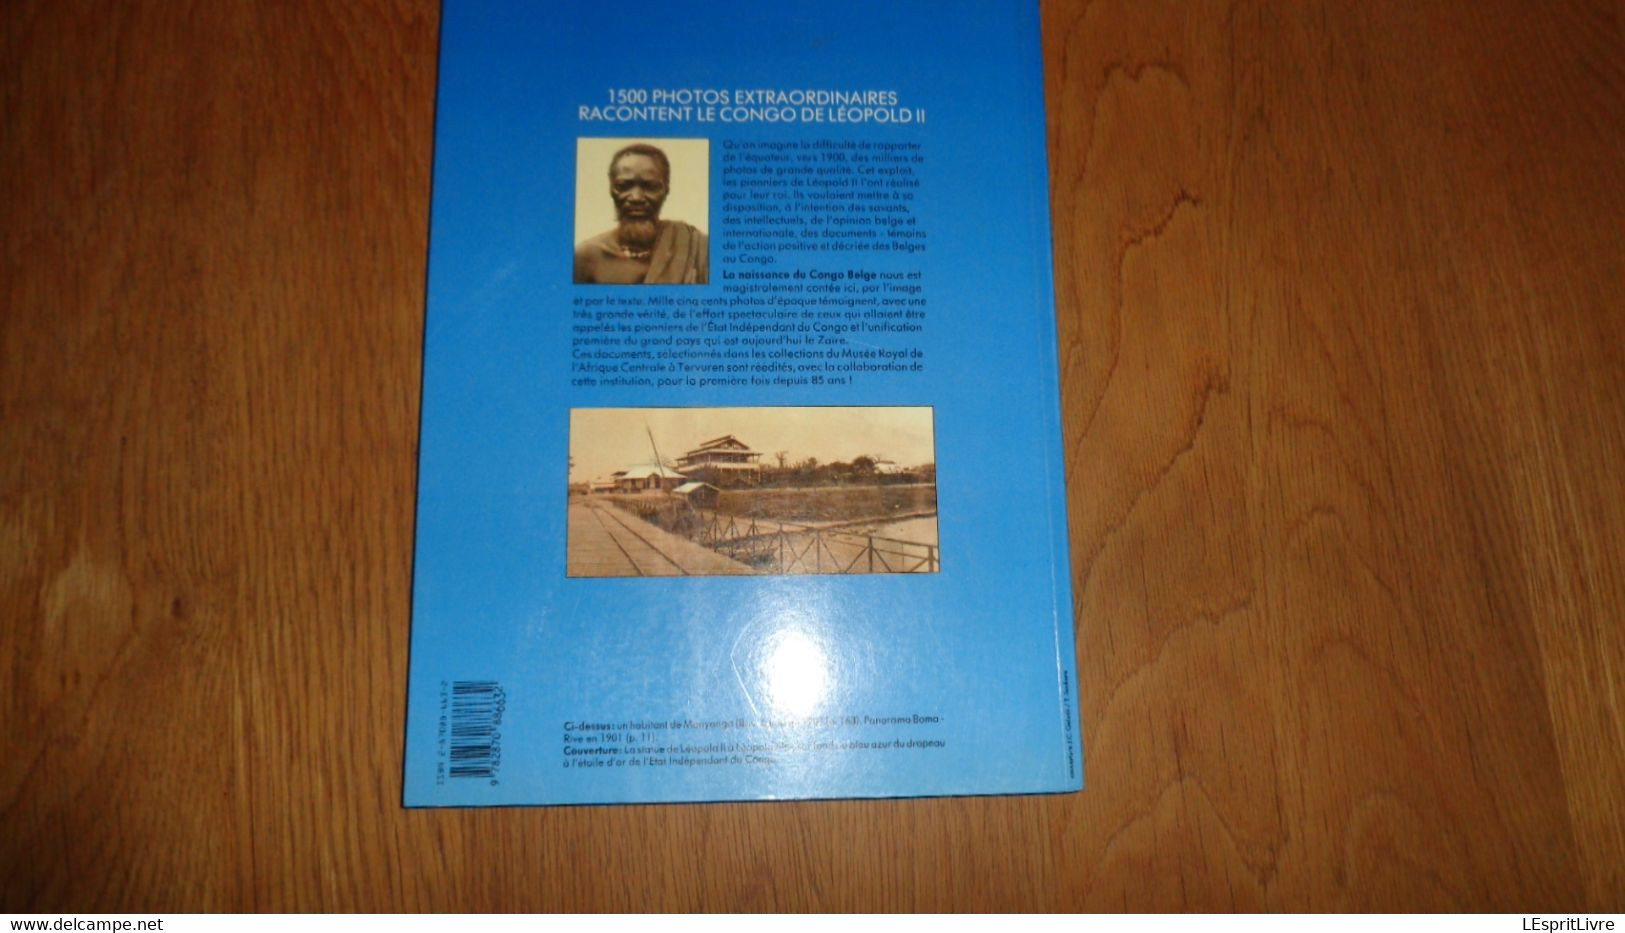 NAISSANCE DU CONGO BELGE 1500 Photos d'Epoque sur le Pays et de ses Habitants 1903 1904 Colonie Afrique Jésuite Port